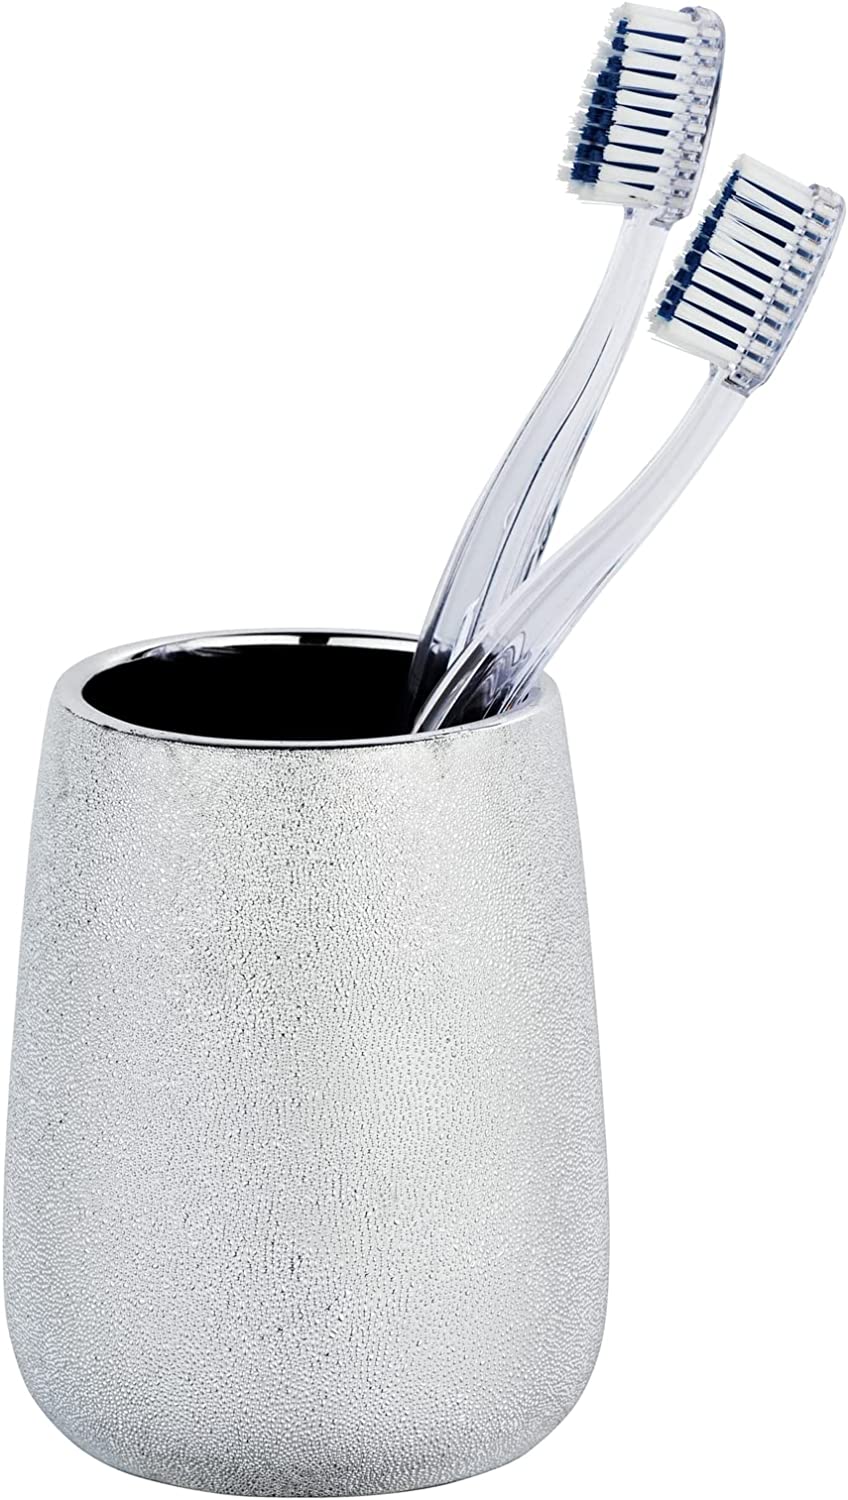 Zahnputzbecher Glimma Silber Keramik - Zahnbürstenhalter für Zahnbürste und Zahnpasta, Keramik, 8.5 x 10.5 x 8.5 cm, Silber